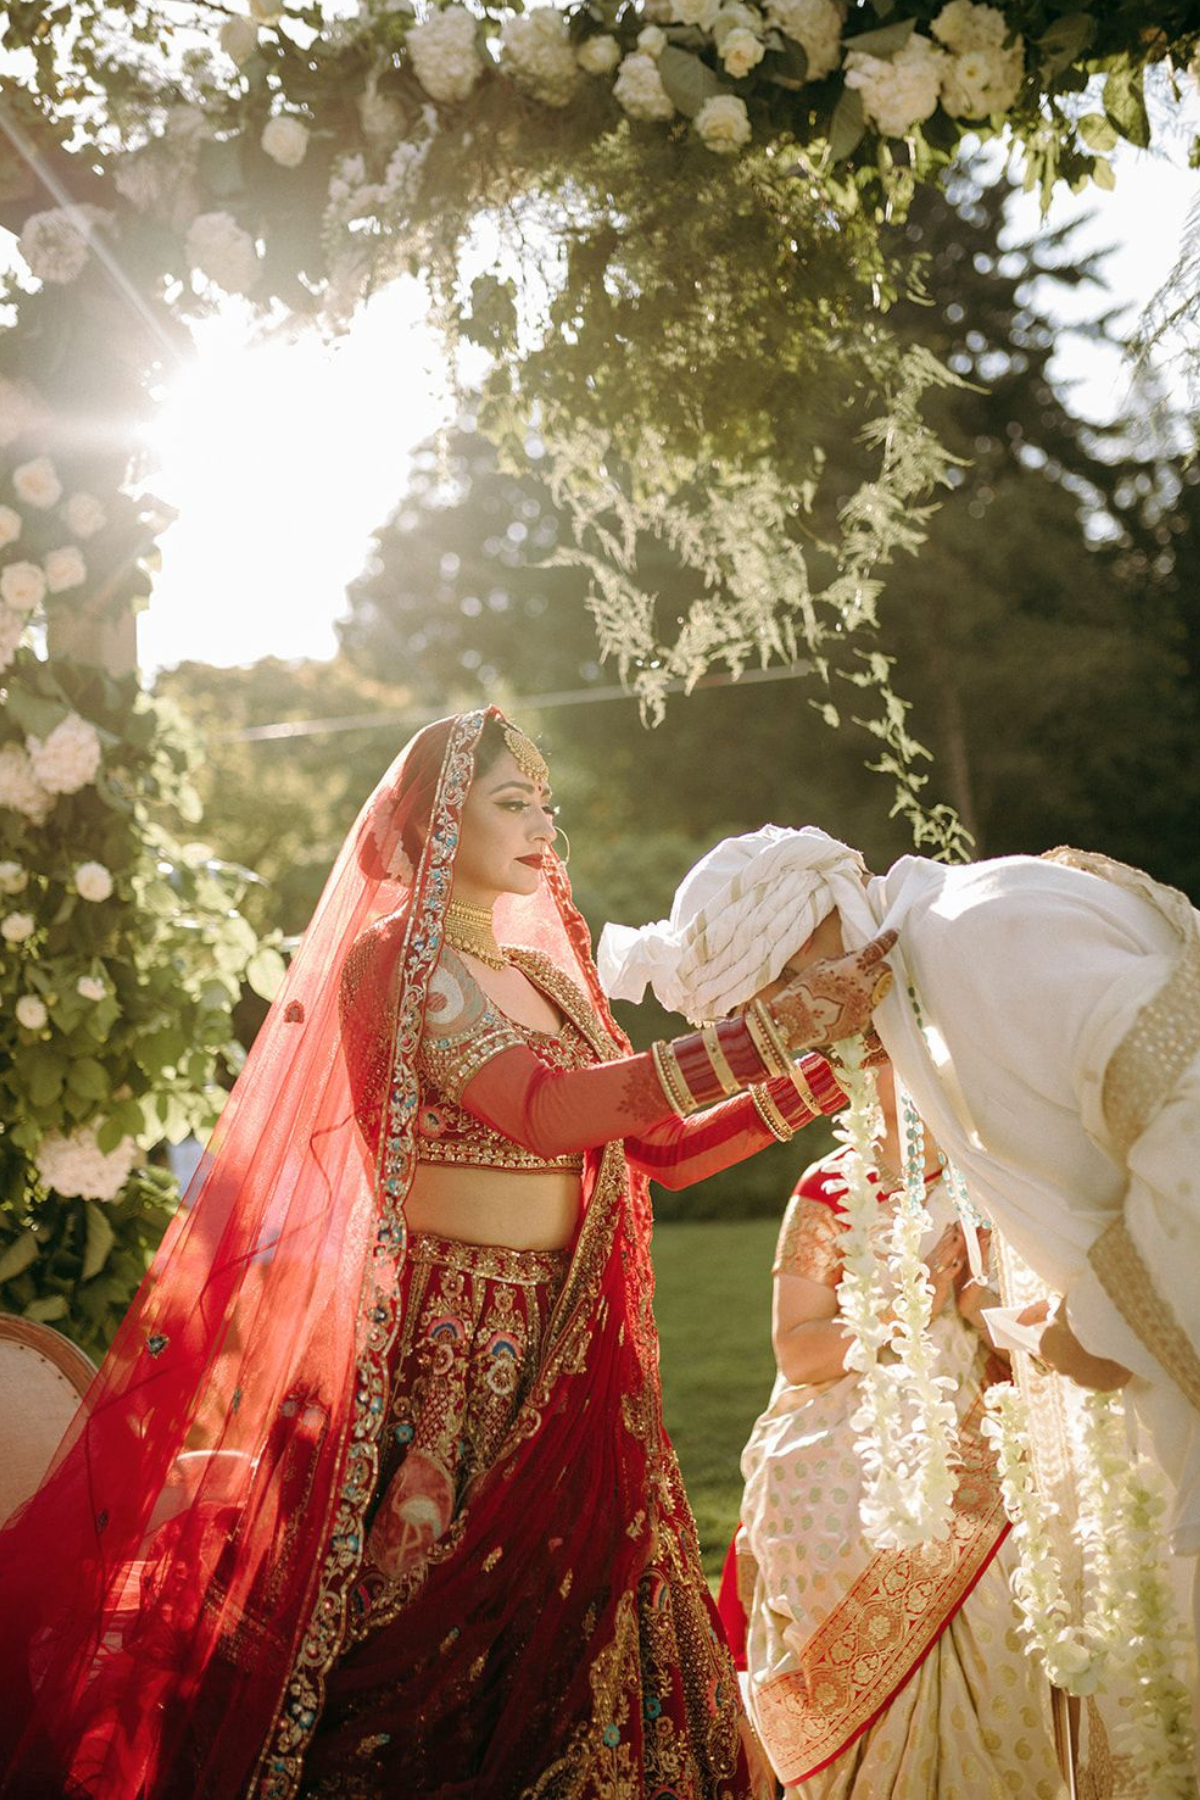 outdoor-garden-hindu-wedding-tent-greenery-mandap-bride-groom